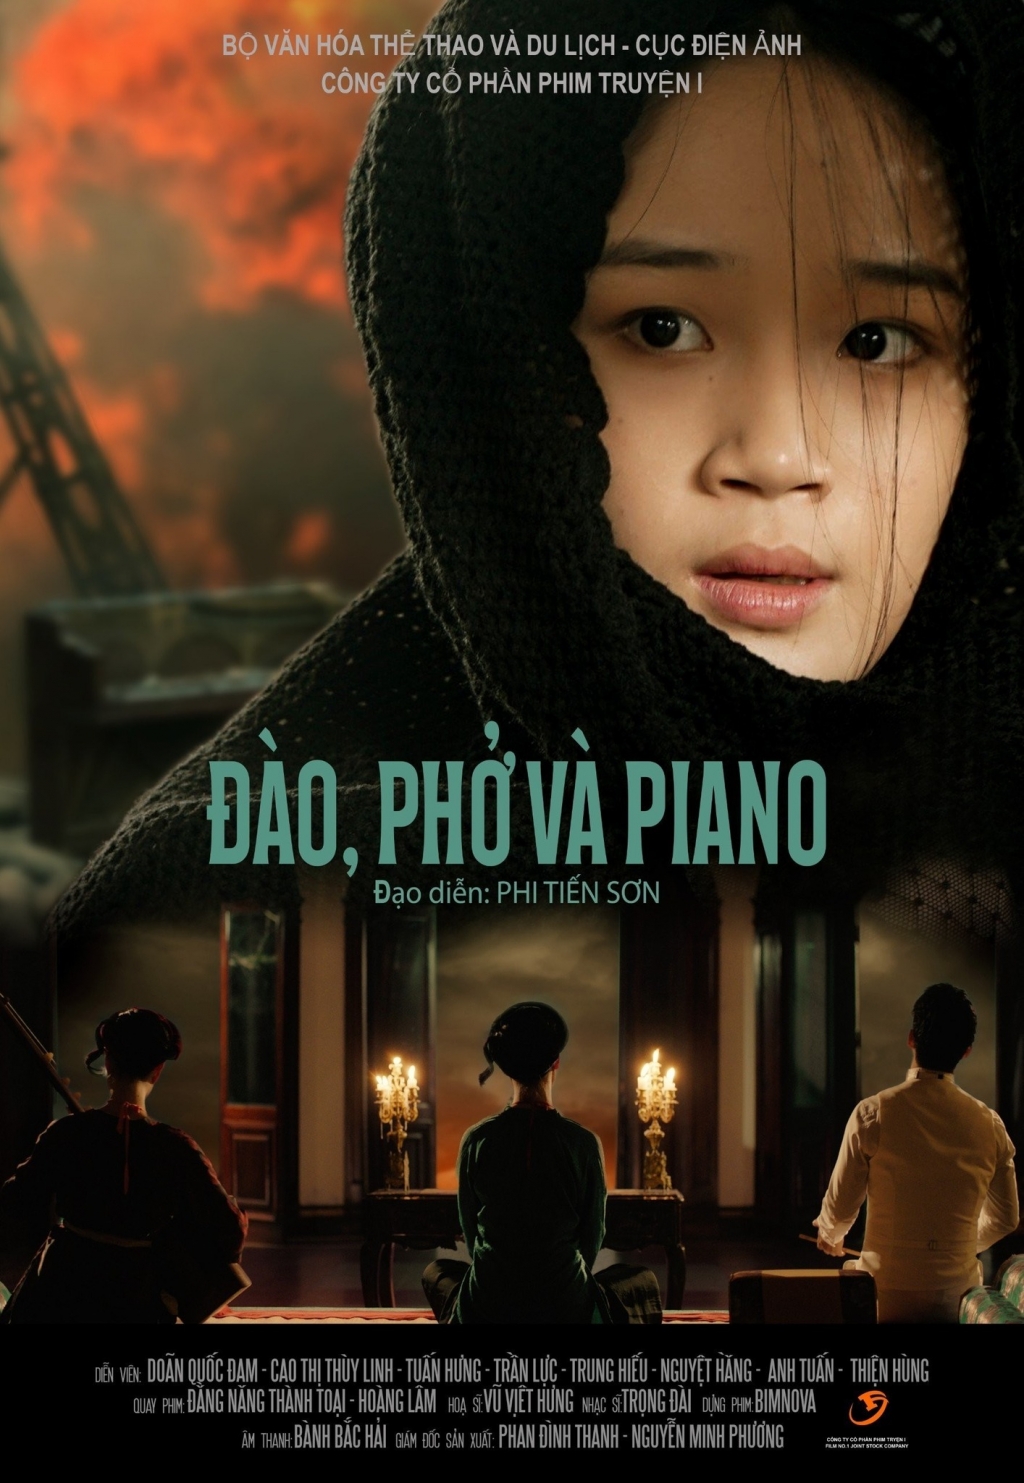 Mai của Trấn Thành góp phần giúp Đào, Phở Và Piano trở thành hiện tượng- Ảnh 1.